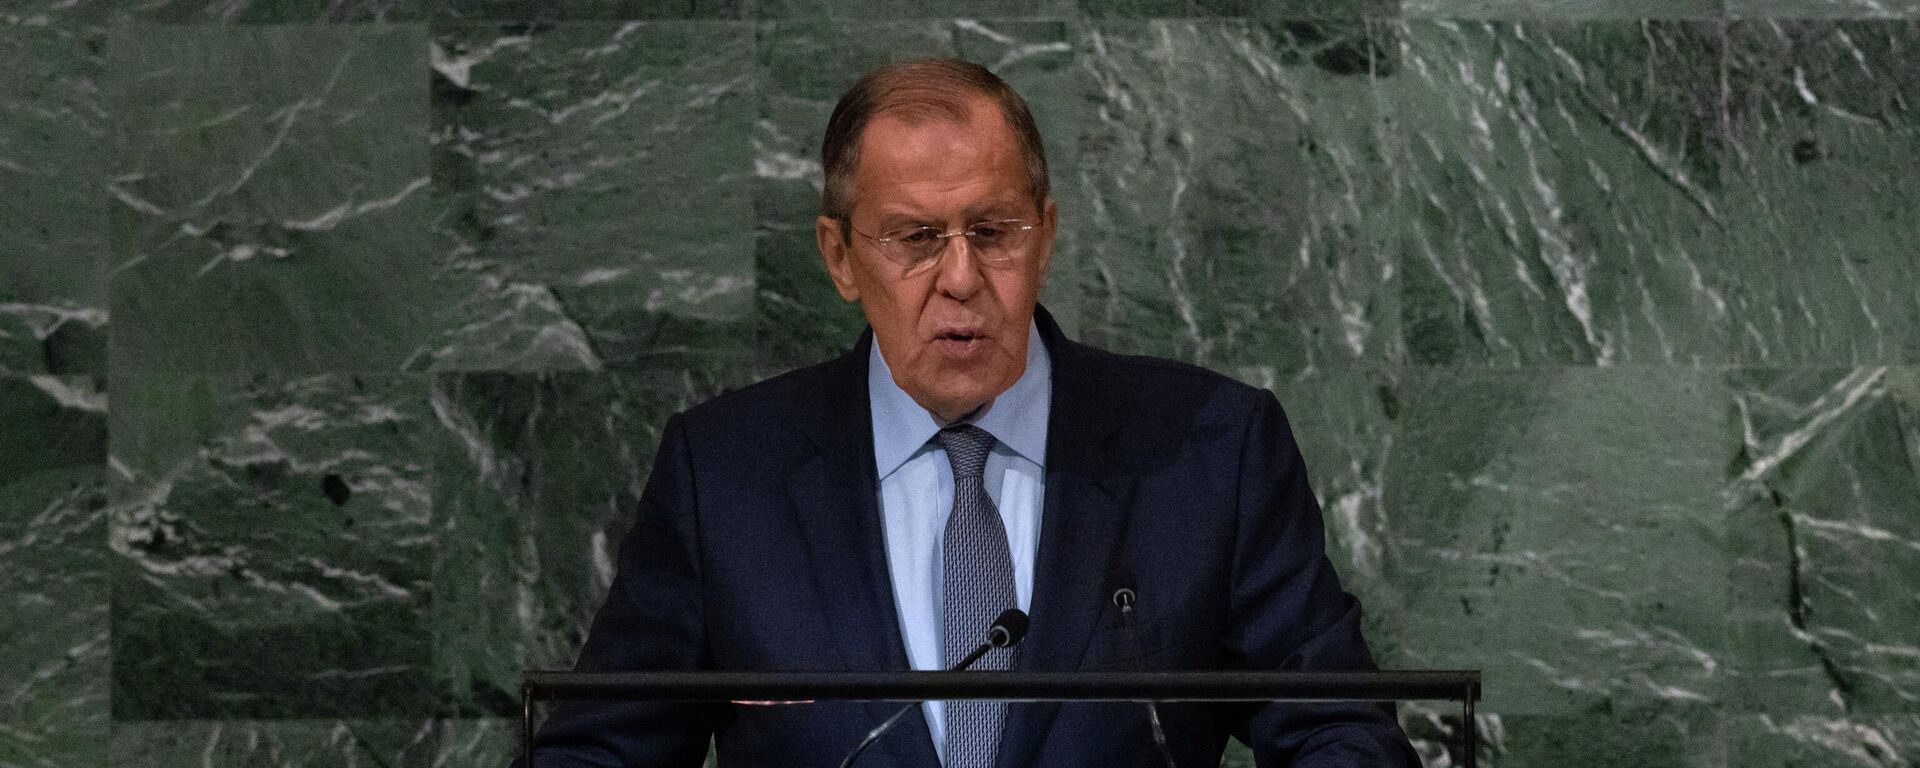 O ministro das Relações Exteriores da Rússia, Sergei Lavrov, discursa na 77ª sessão da Assembleia Geral das Nações Unidas, na sede da ONU em Nova York, em 24 de setembro de 2022 - Sputnik Brasil, 1920, 24.09.2022